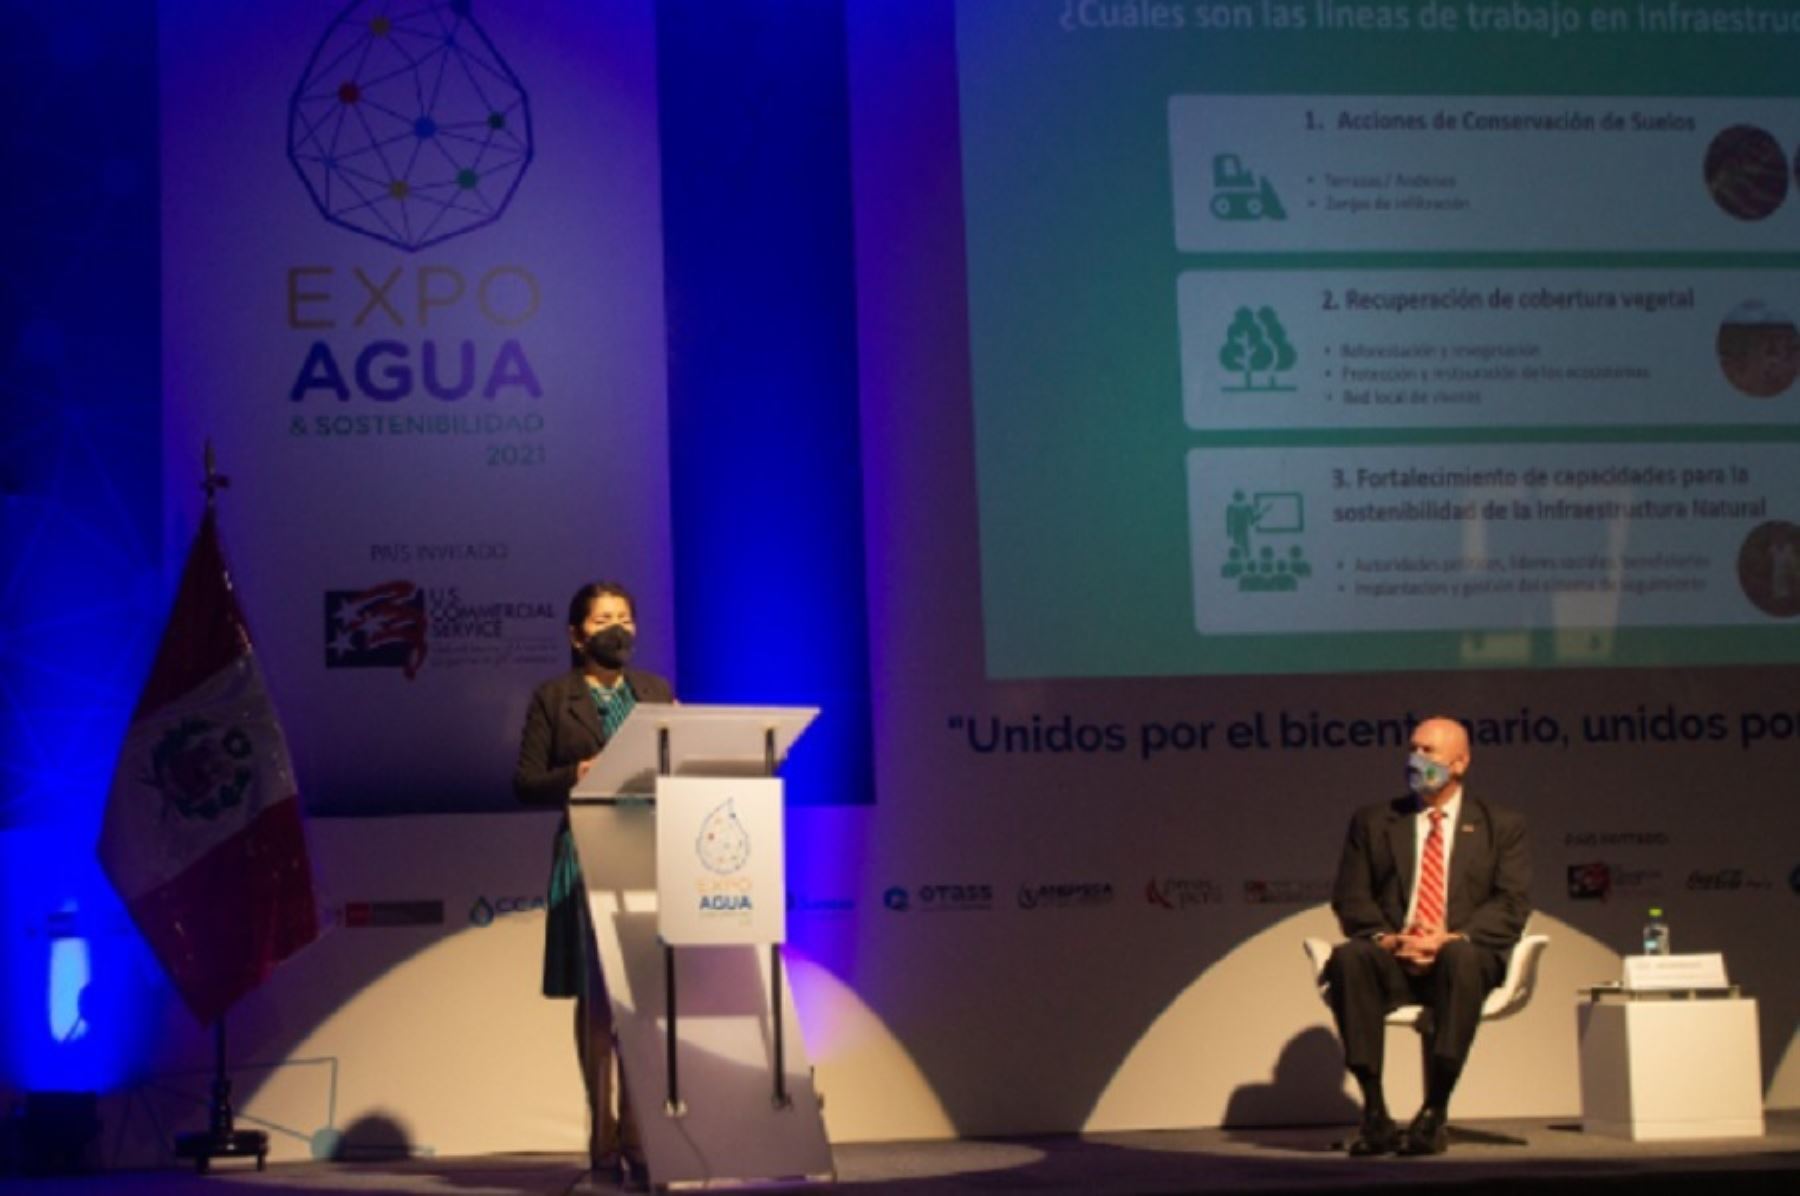 La directora ejecutiva de la Autoridad para la Reconstrucción con Cambios, Amalia Moreno, durante su presentación en la séptima edición de “Expo Agua & Sostenibilidad 2021”